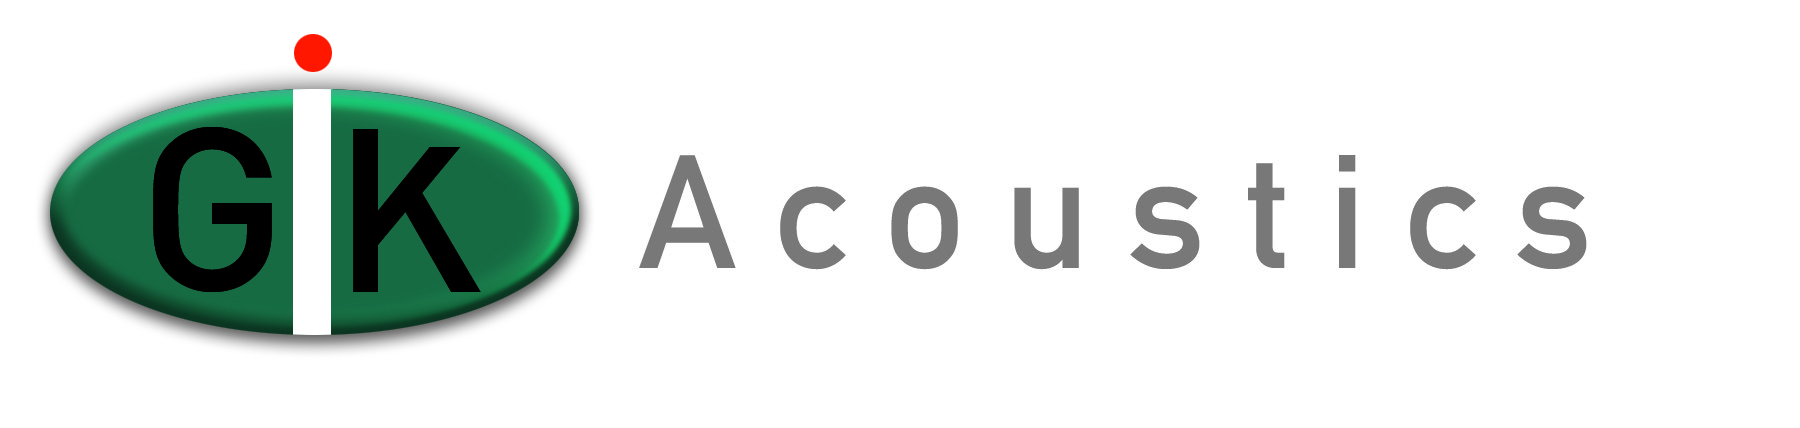 GIK Acoustics Logo copy 2